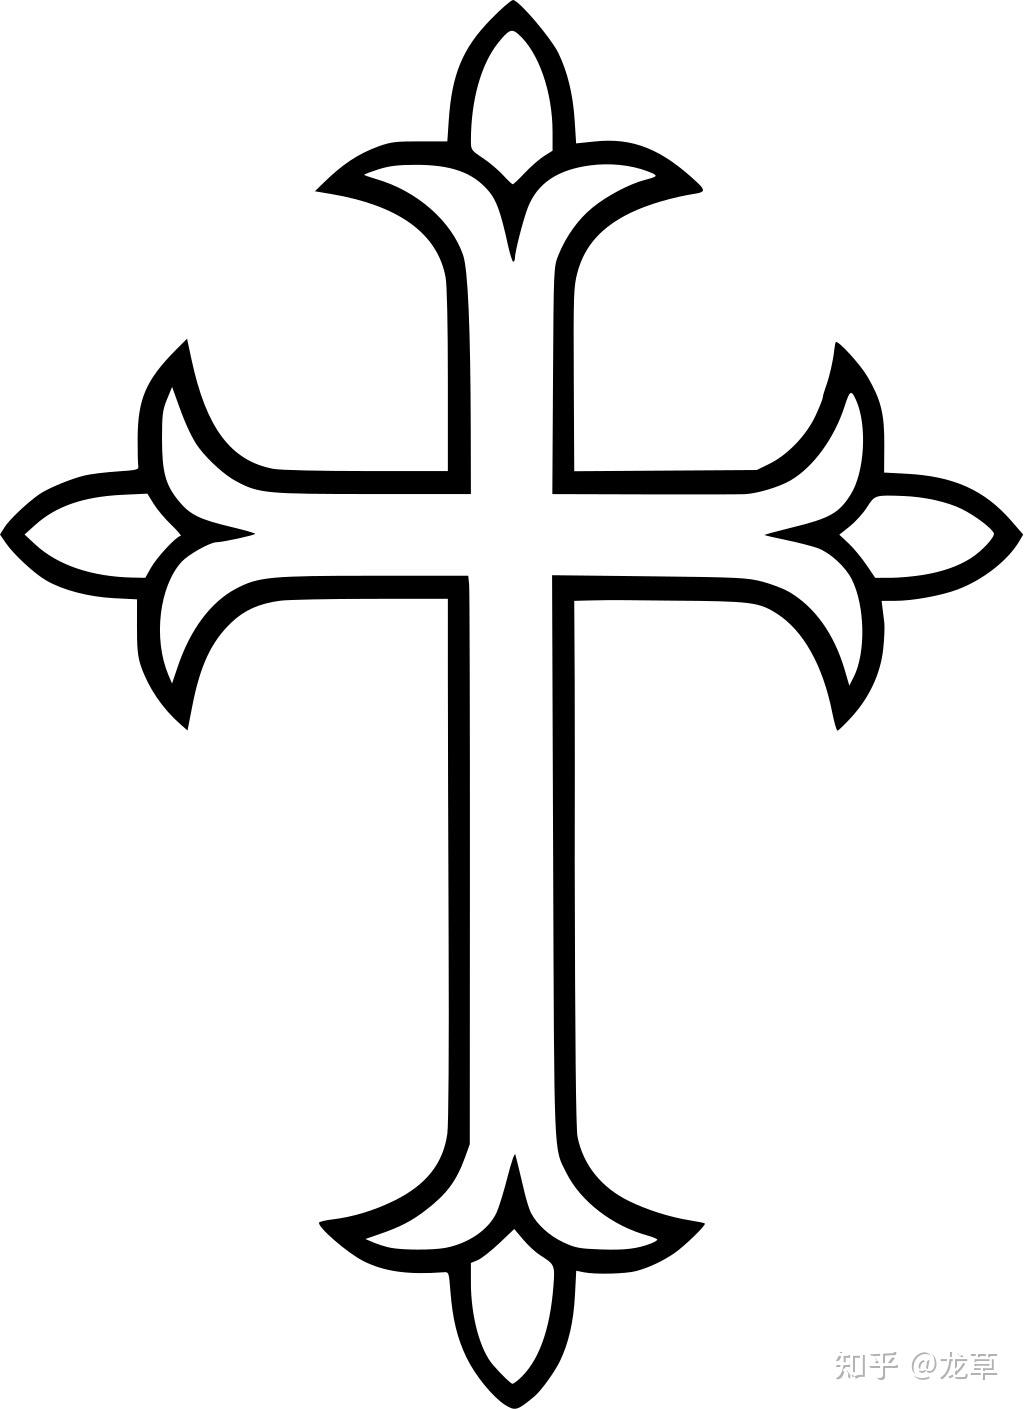 十字架的各种样式图片